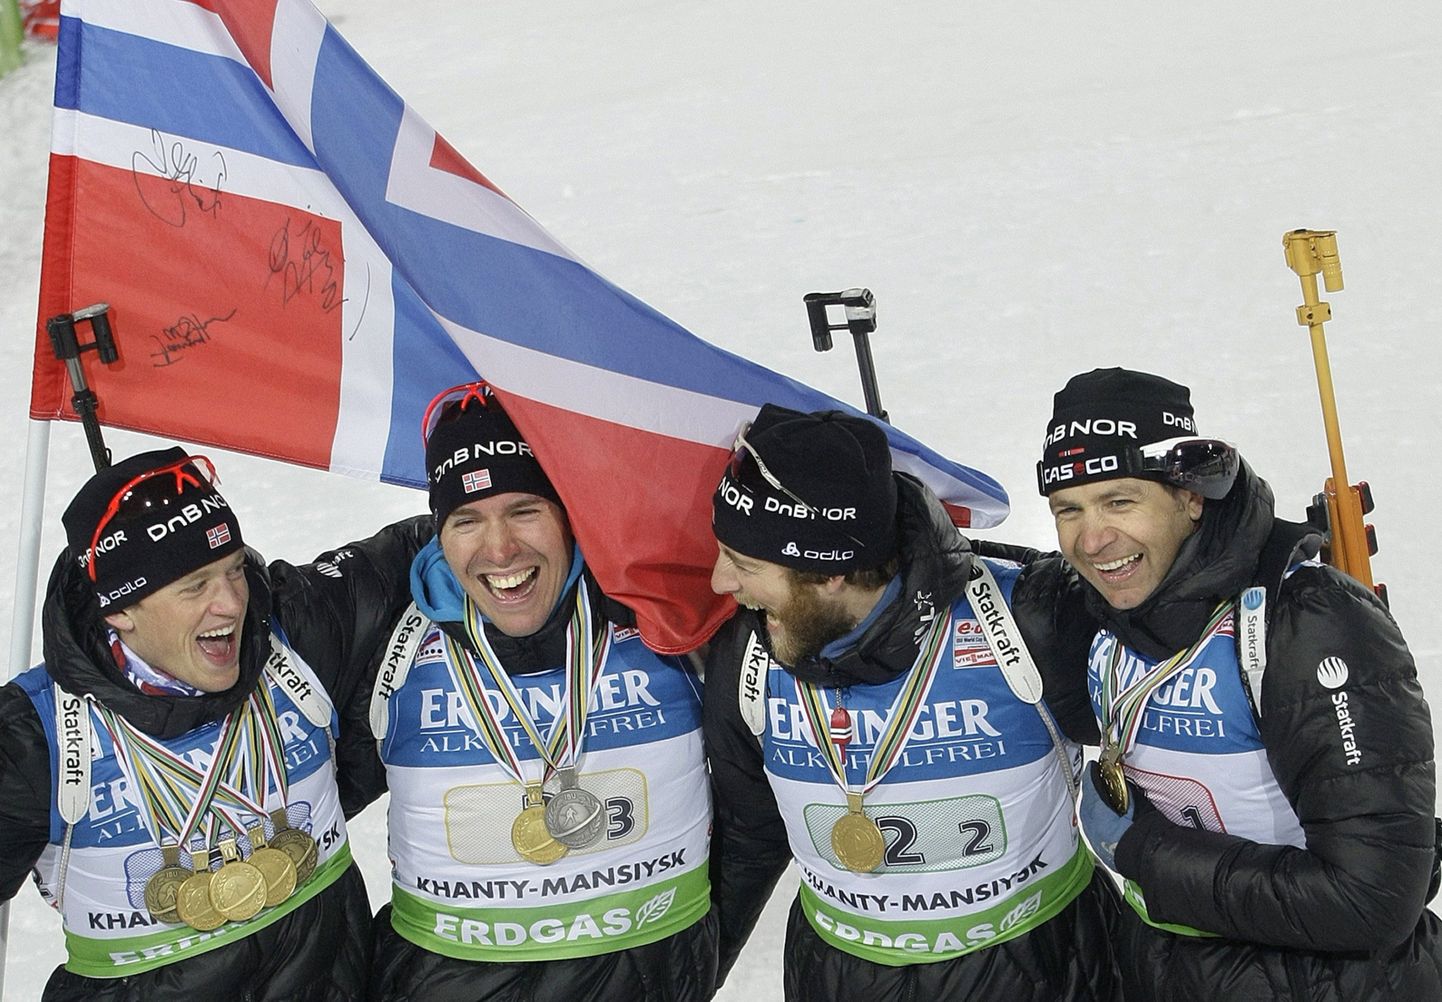 Norra võidukas teatenelik tänavusel MMil: (vasakult) Tarjei Bø, Emil Hegle Svendsen, Alexander Os ja Ole Einar Bjørndalen.